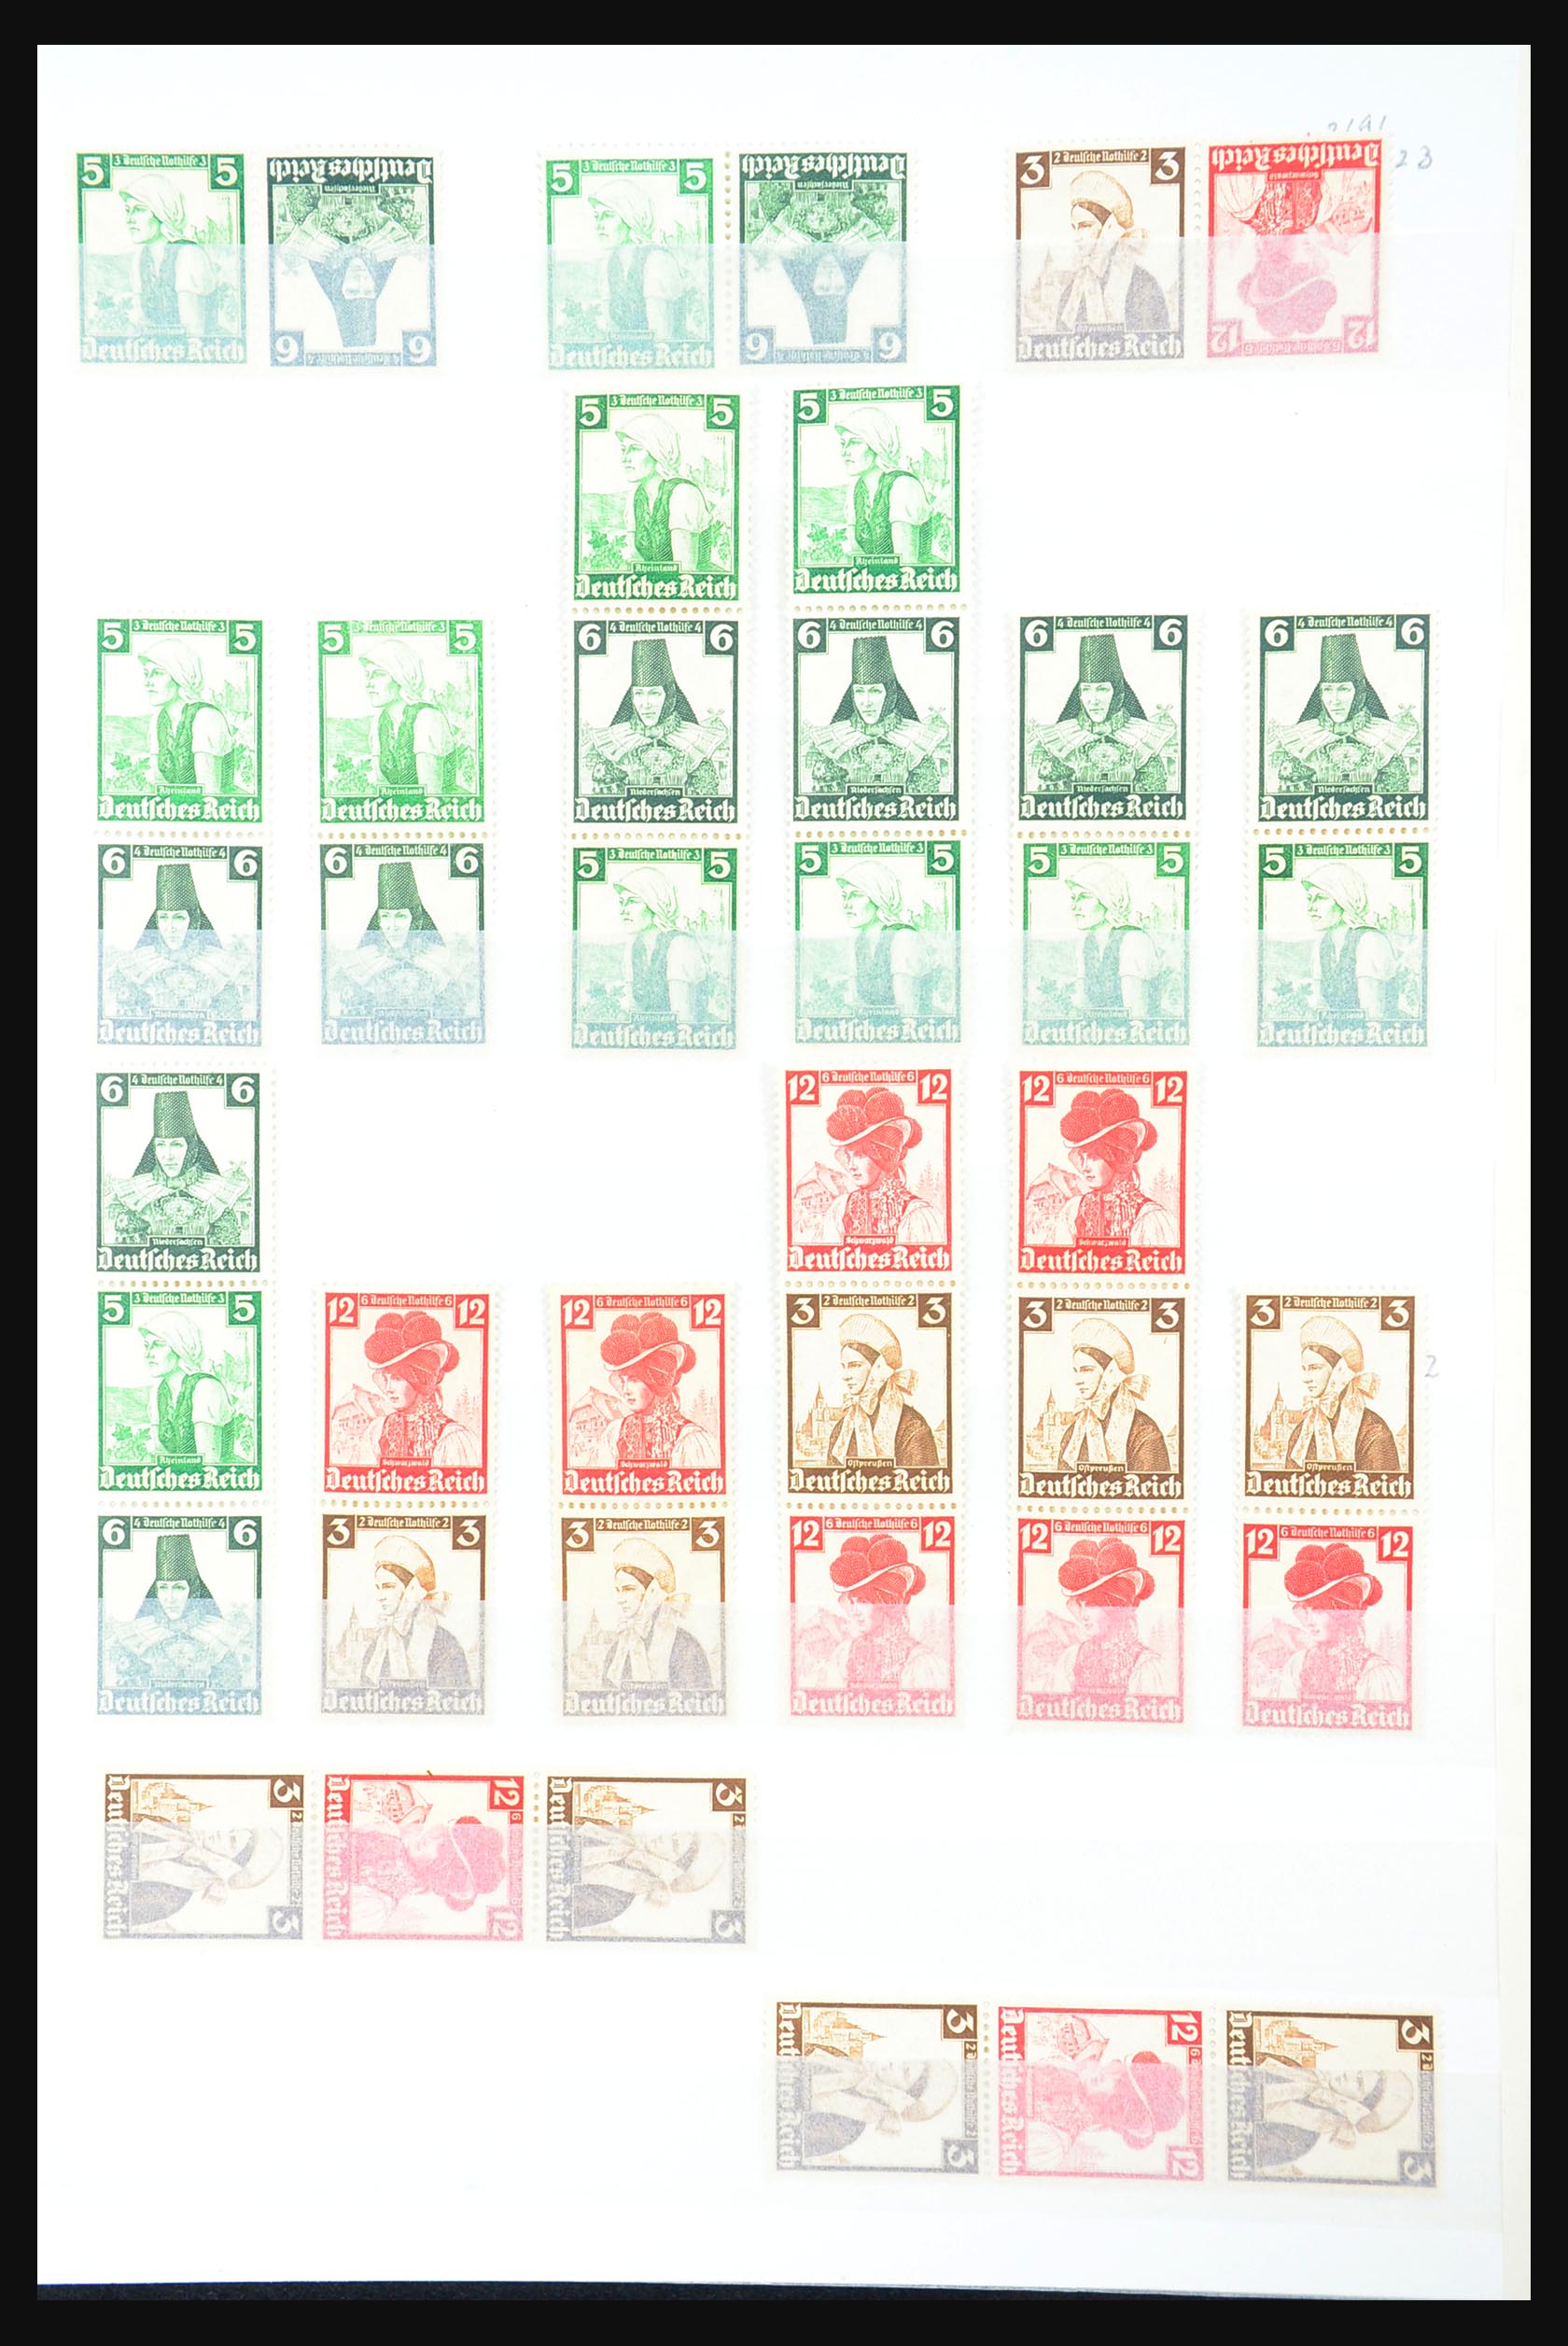 31391 025 - 31391 Duitse Rijk combinaties postfris 1913-1941.